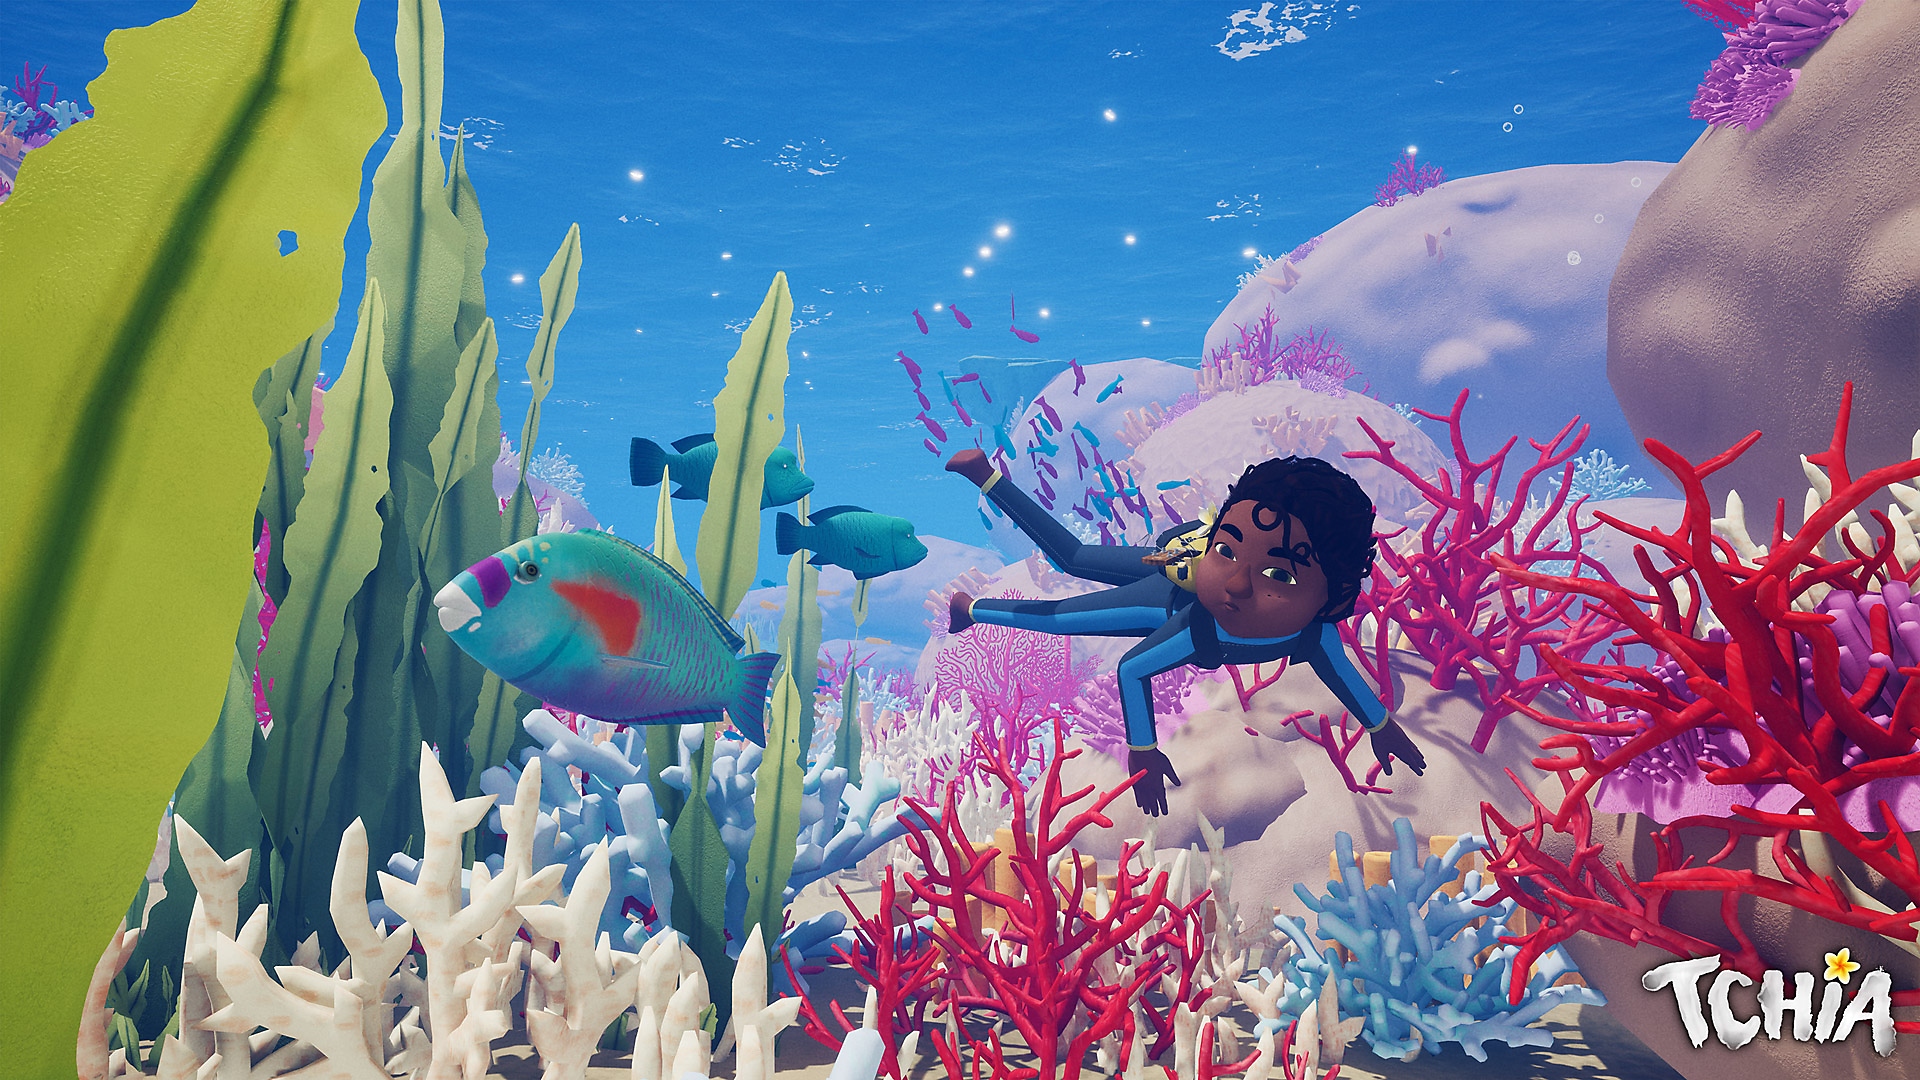 صورة فنية لبطلة لعبة Tchia تظهر فيها الشخصية الأساسية وهي تسبح تحت الماء